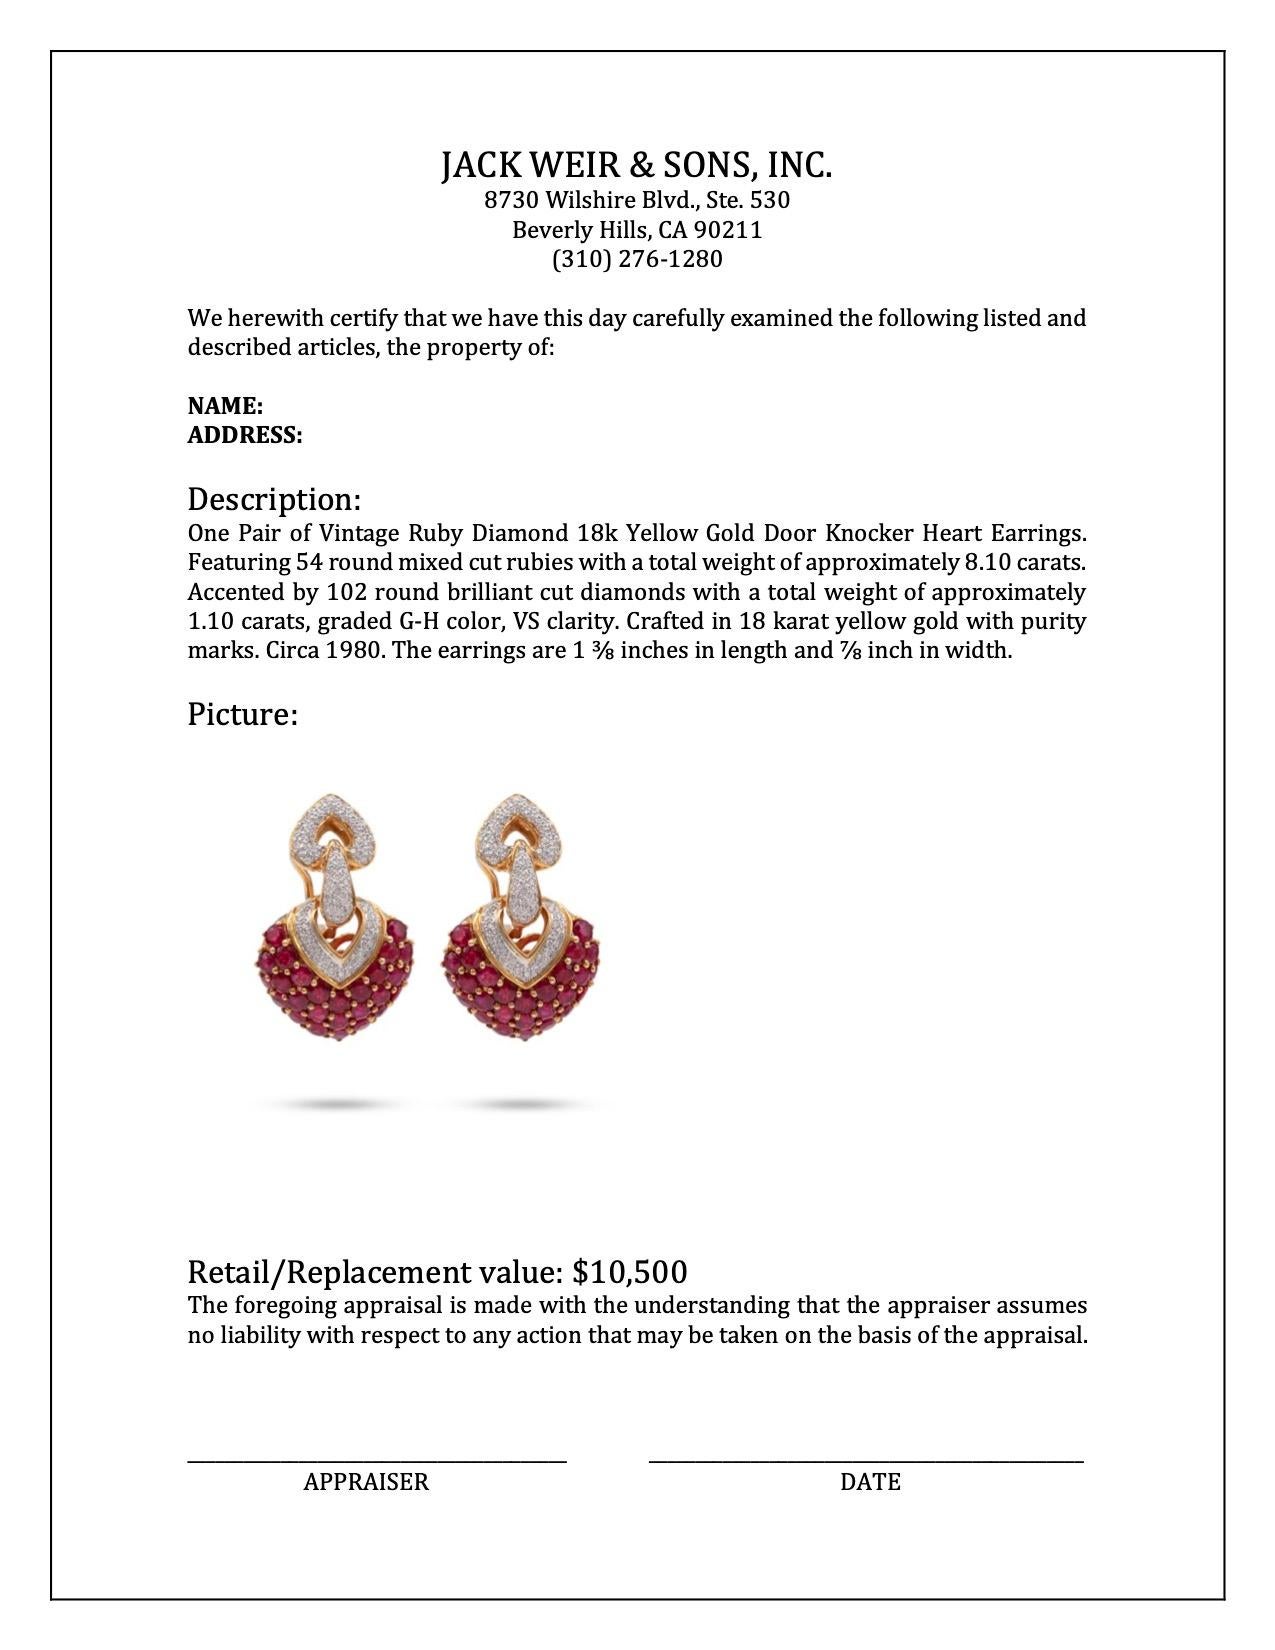 Vintage Ruby Diamond 18k Yellow Gold Door Knocker Heart Earrings 1